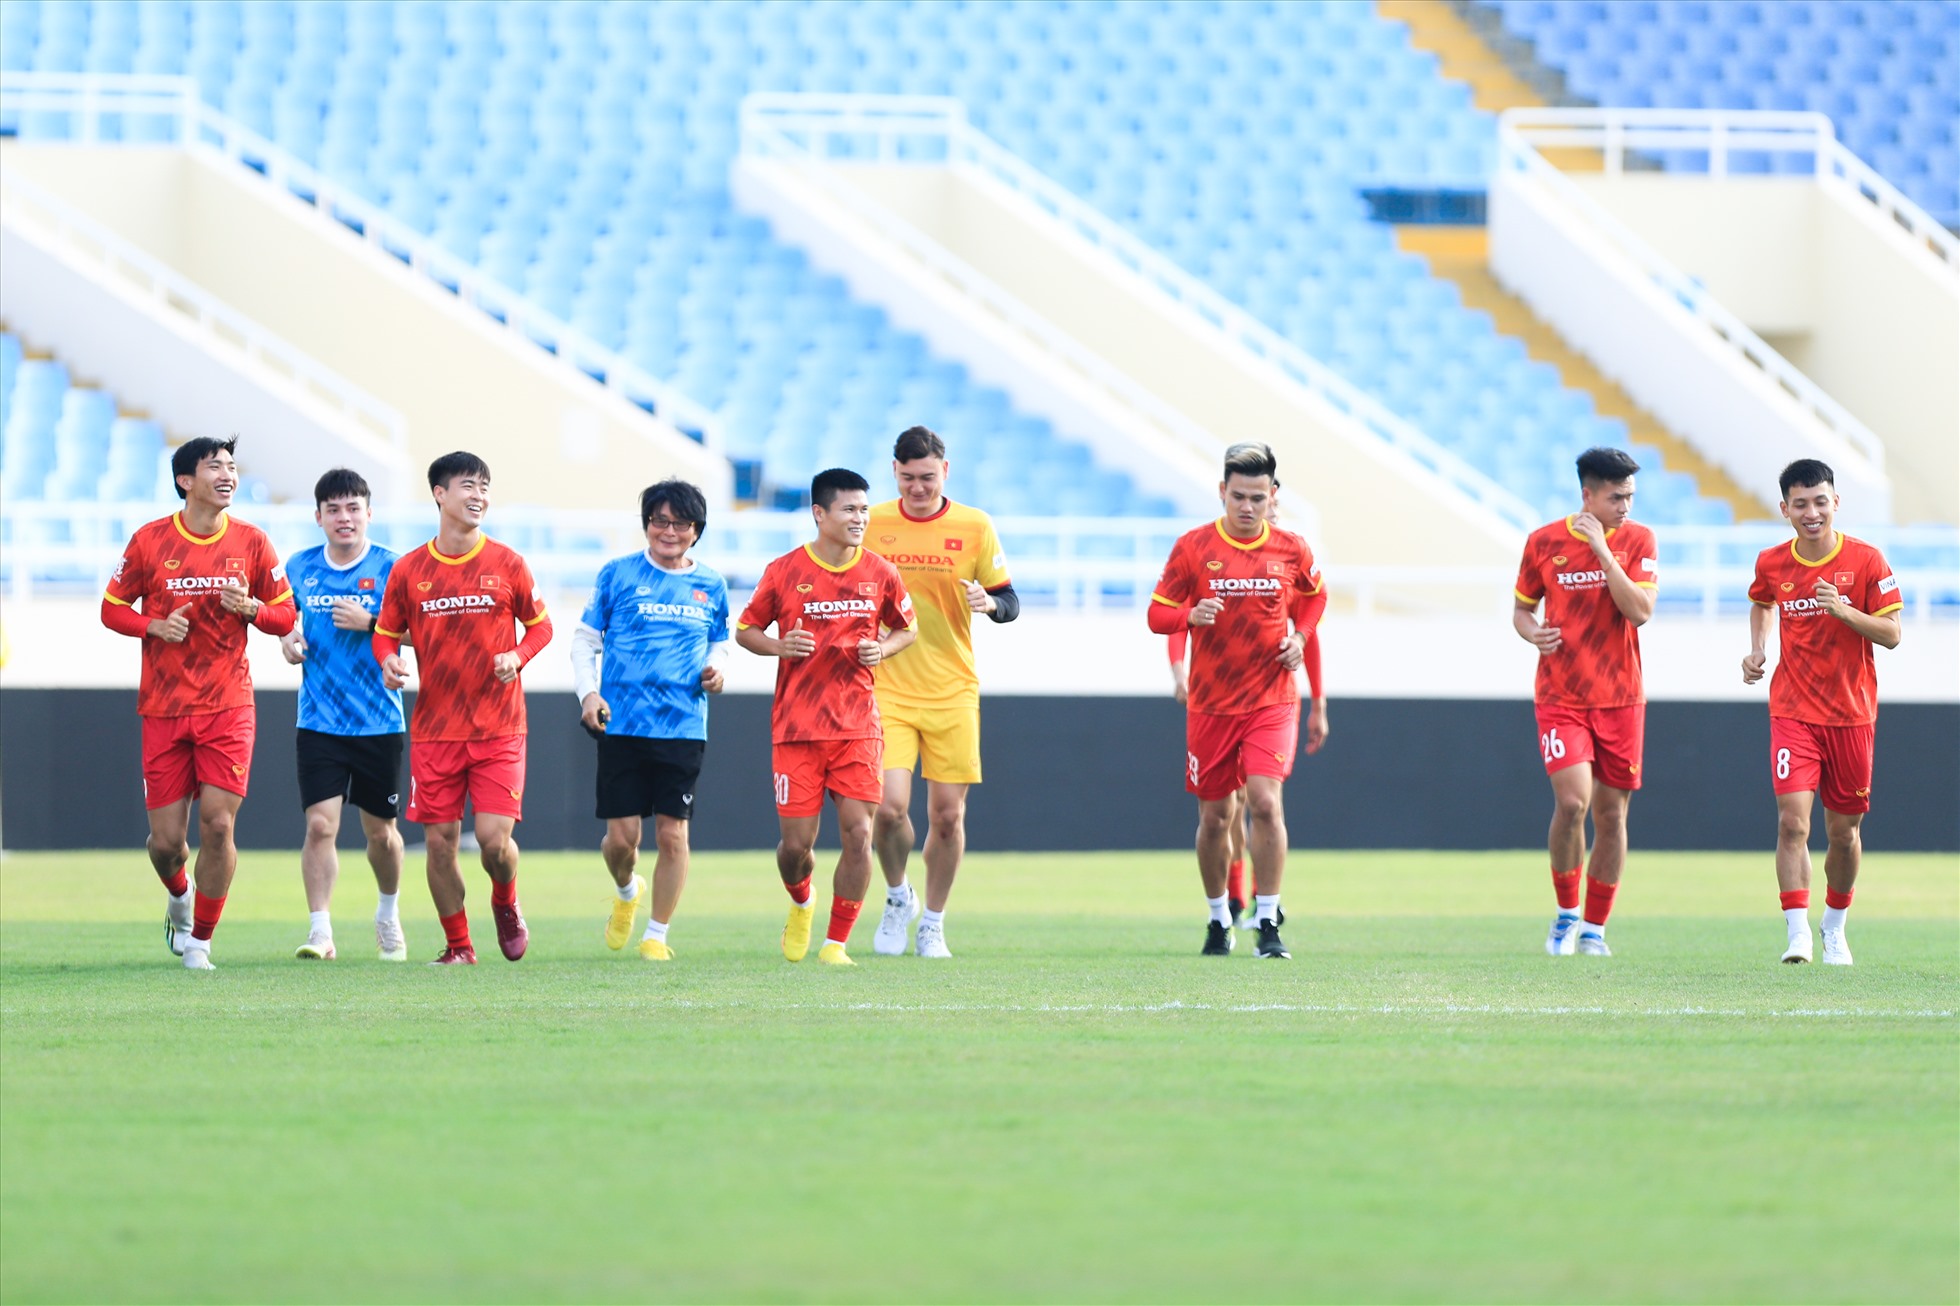 Đội tuyển Việt Nam chia thành 2 nhóm tập luyện. Nhóm thi đấu trận cúp quốc gia sẽ tập riêng, hồi phục. Nhóm còn lại tập các bài tập chiến thuật.